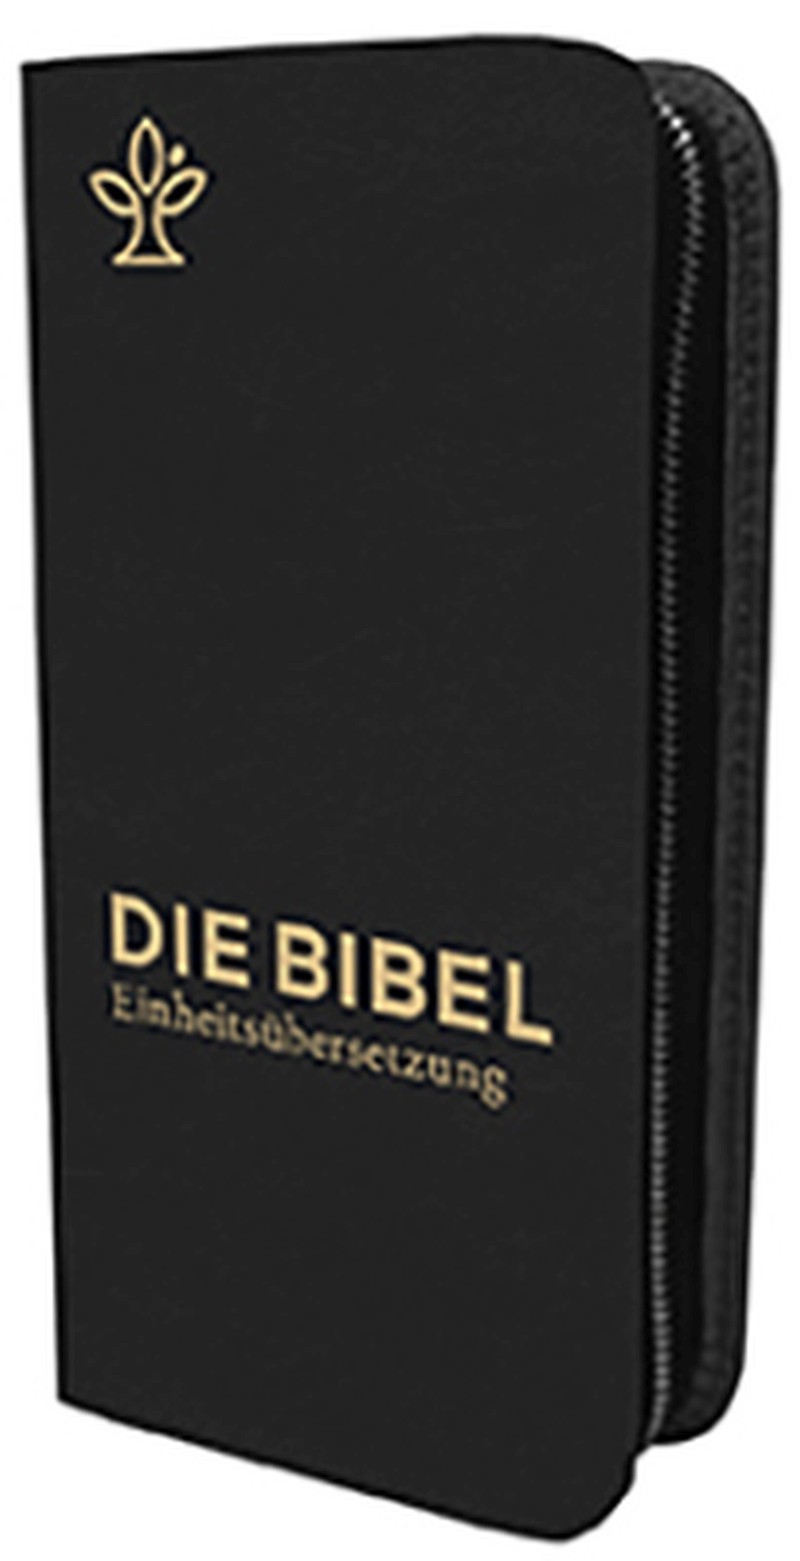 Die Bibel - Einheitsübersetzung -Taschenausgabe